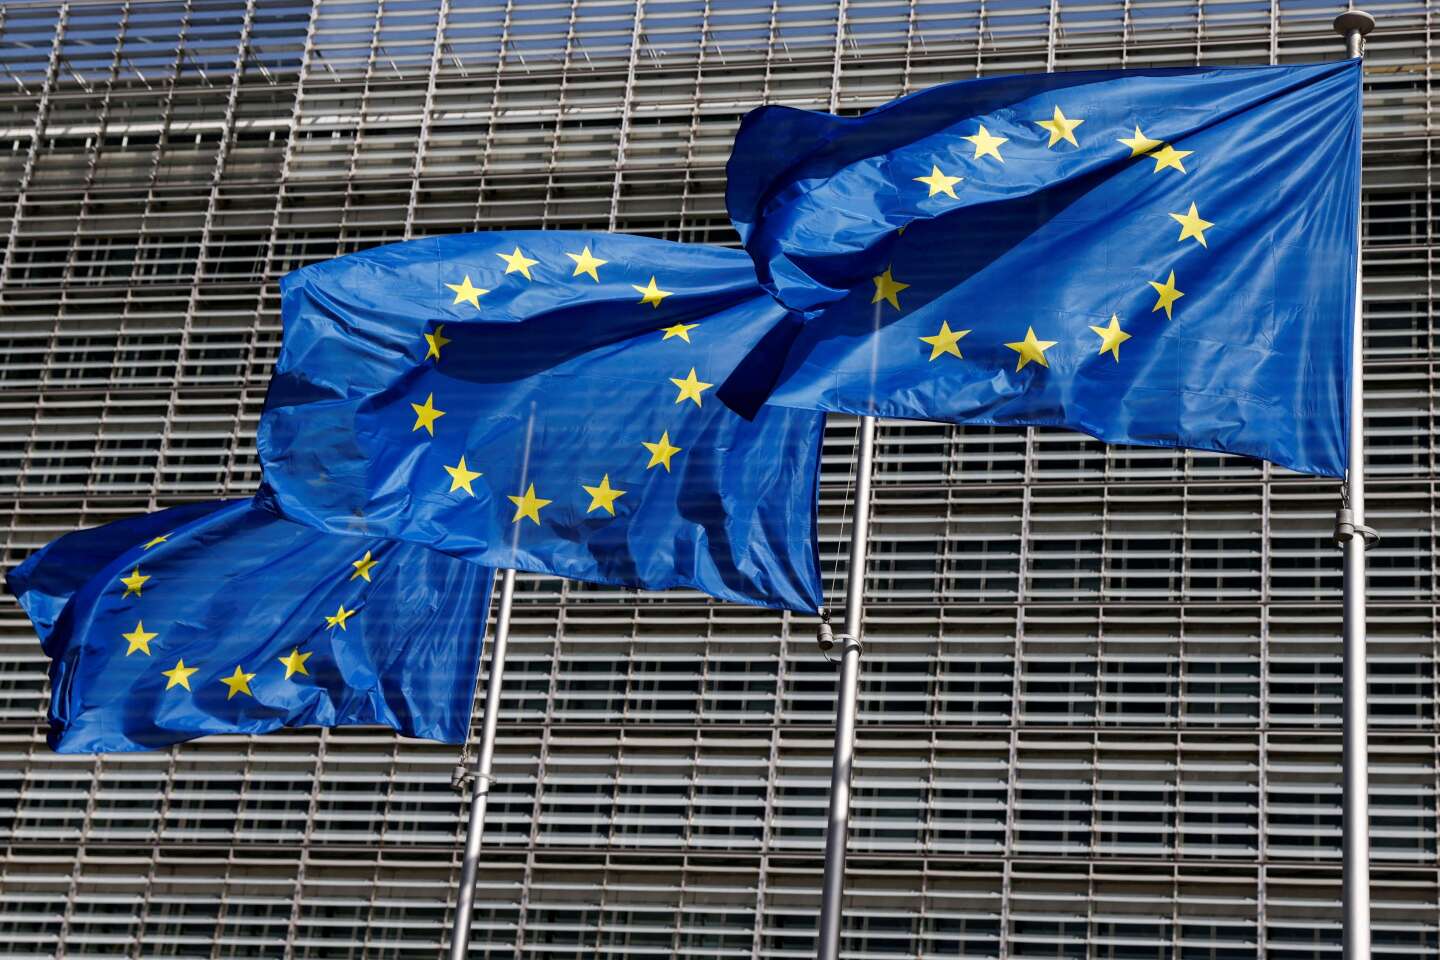 Crise énergétique : les pays membres de l’UE s’accordent sur certaines mesures d’urgence pour réduire les factures